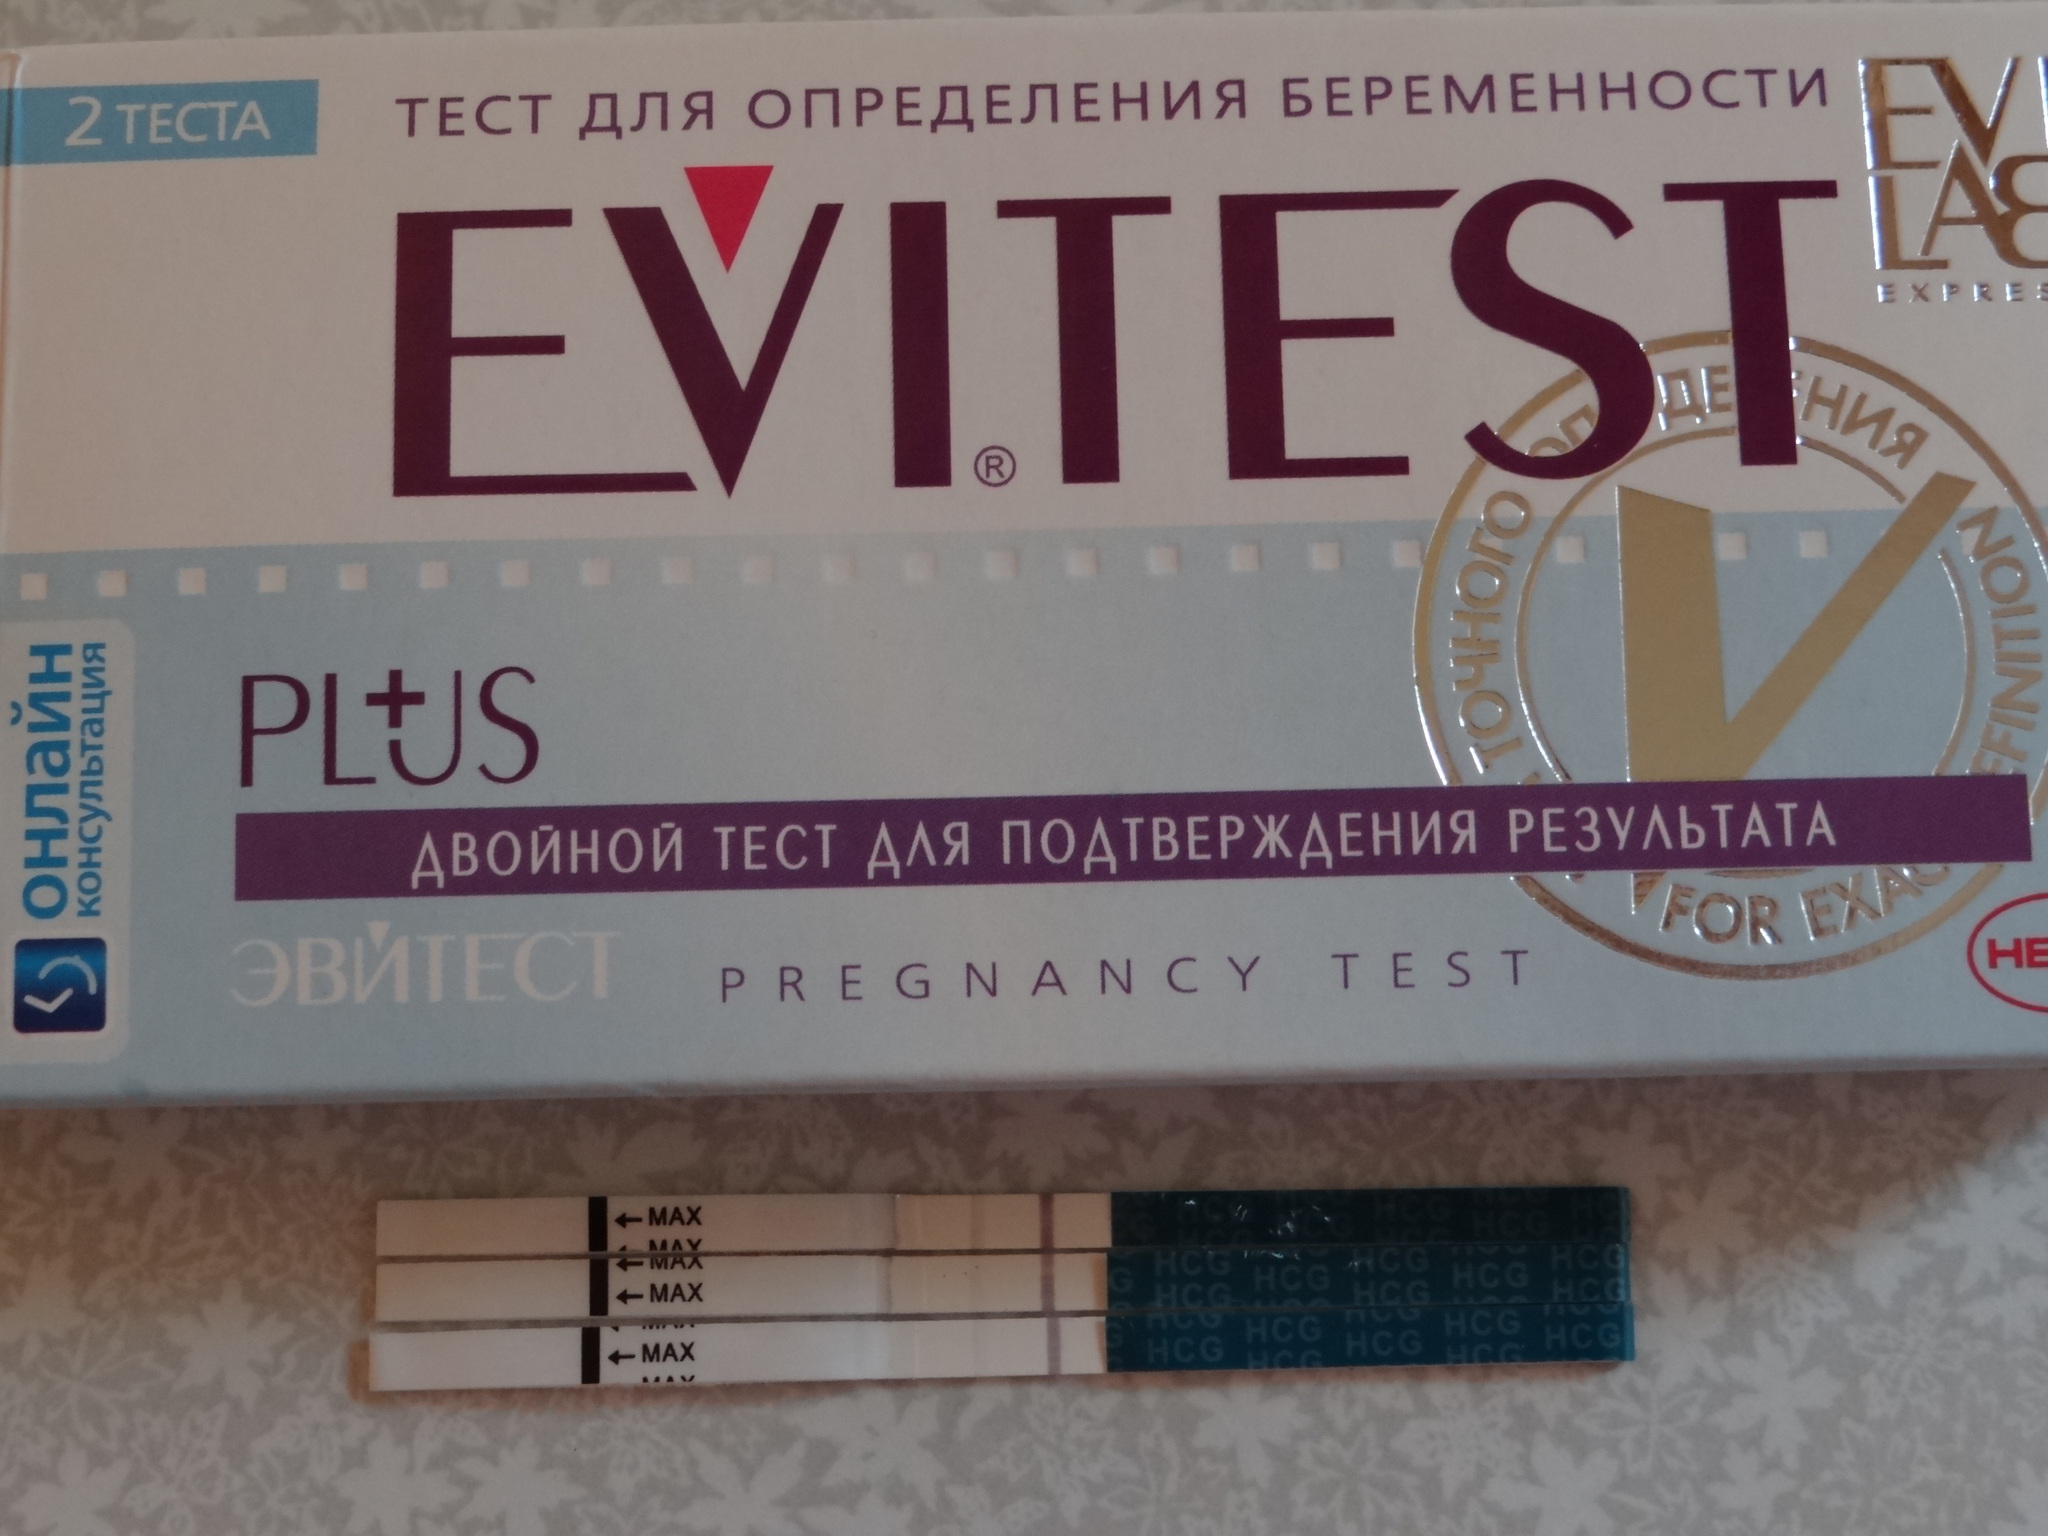 Тест на беременность название. Тест для определения беременности на ранних сроках до задержки. Самый точный тест на беременность. Самый хороший тест на беременность. Самый качественный тест на беременность.